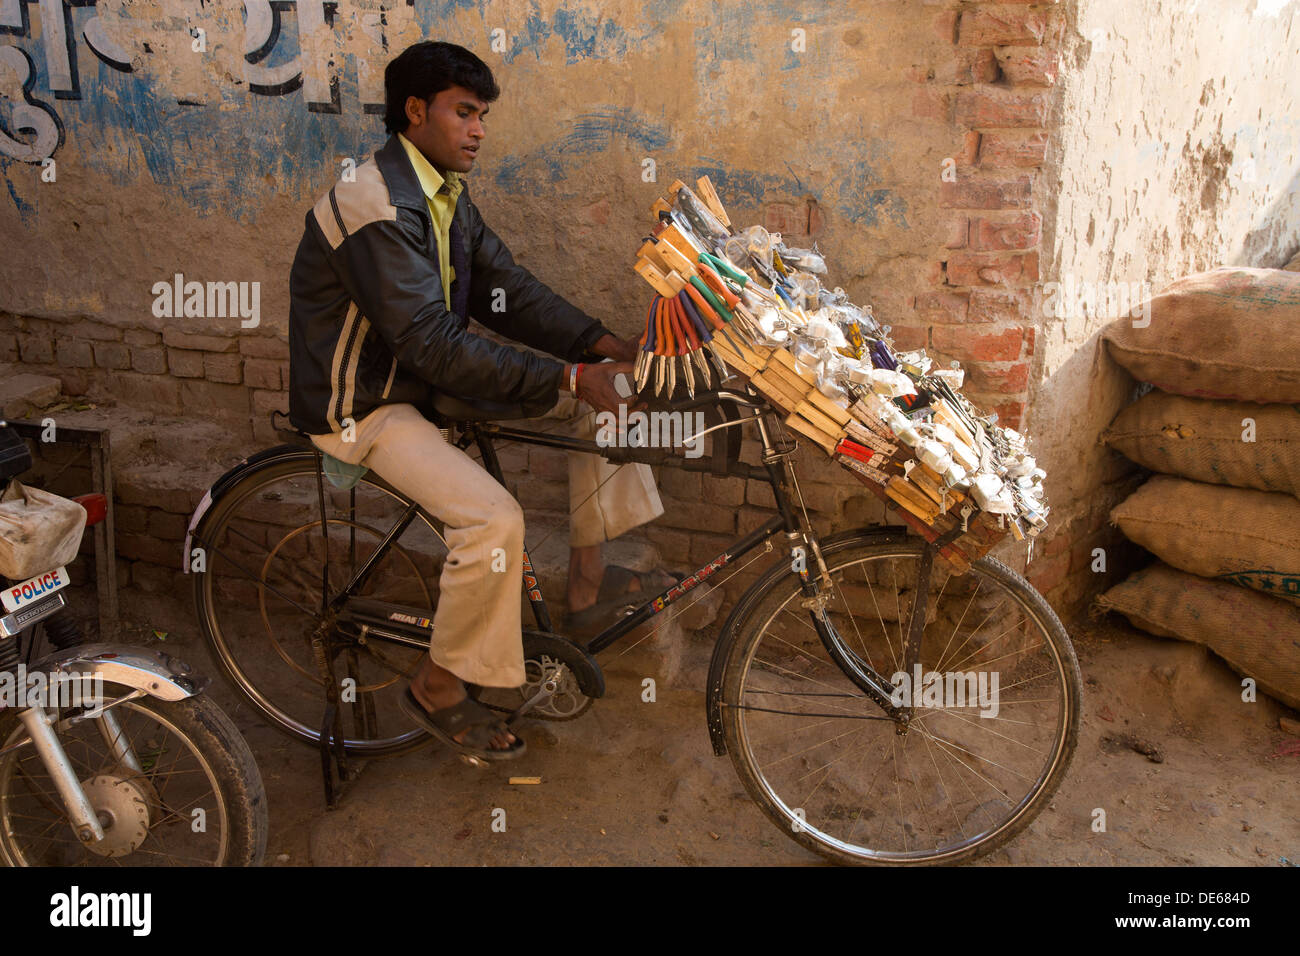 Indien, Agra, Uttar Pradesh Messerschleifer am Gemüsemarkt. Schleifscheibe ist mit dem Fahrrad angetrieben. Stockfoto